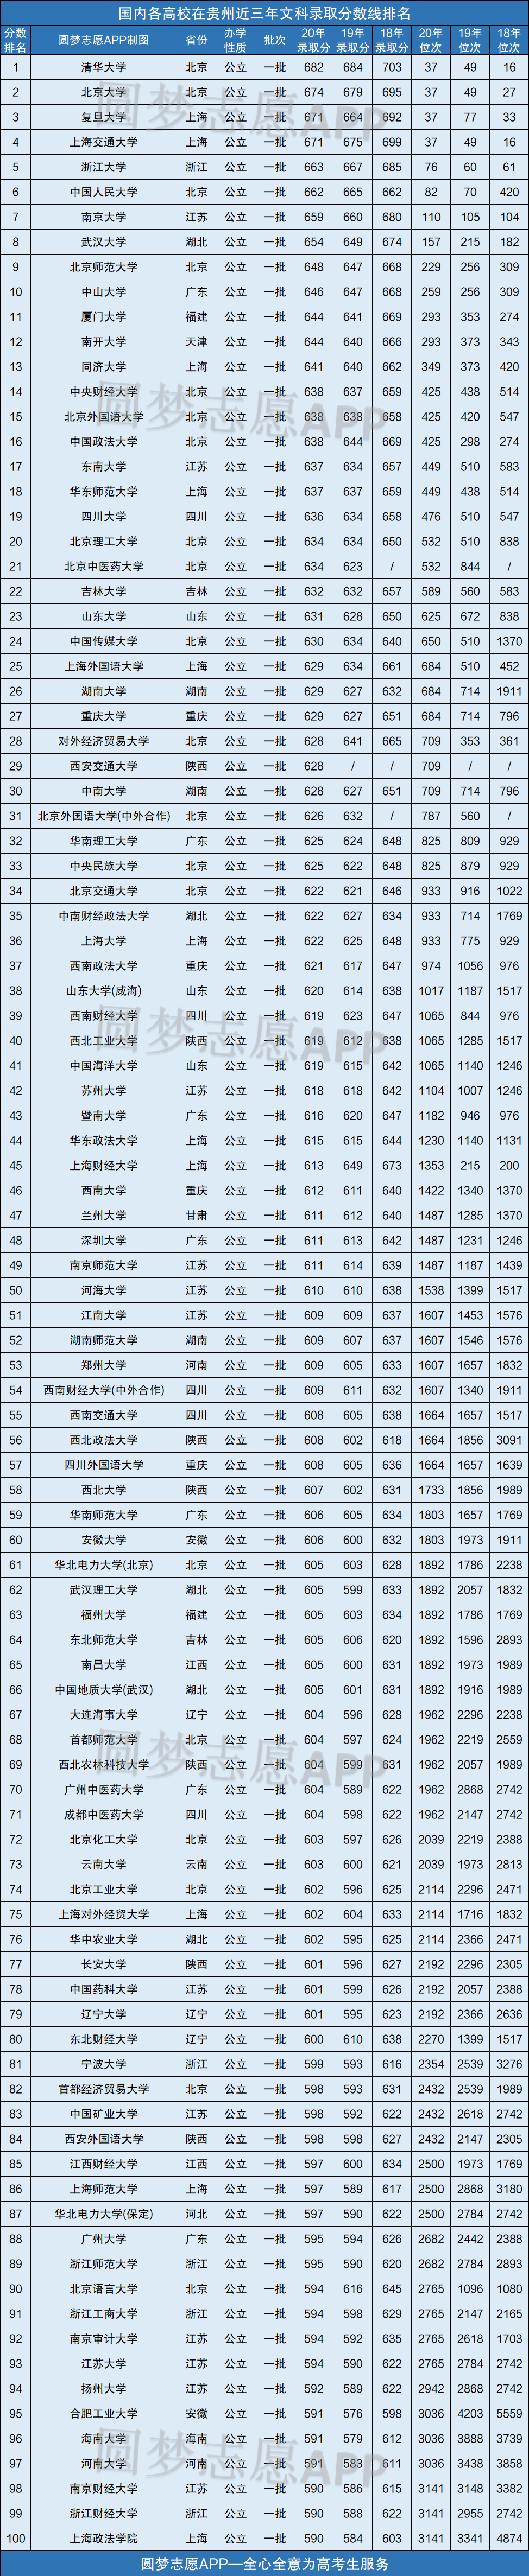 贵州所有大学录取分数线2021参考:2020年各高校在贵州